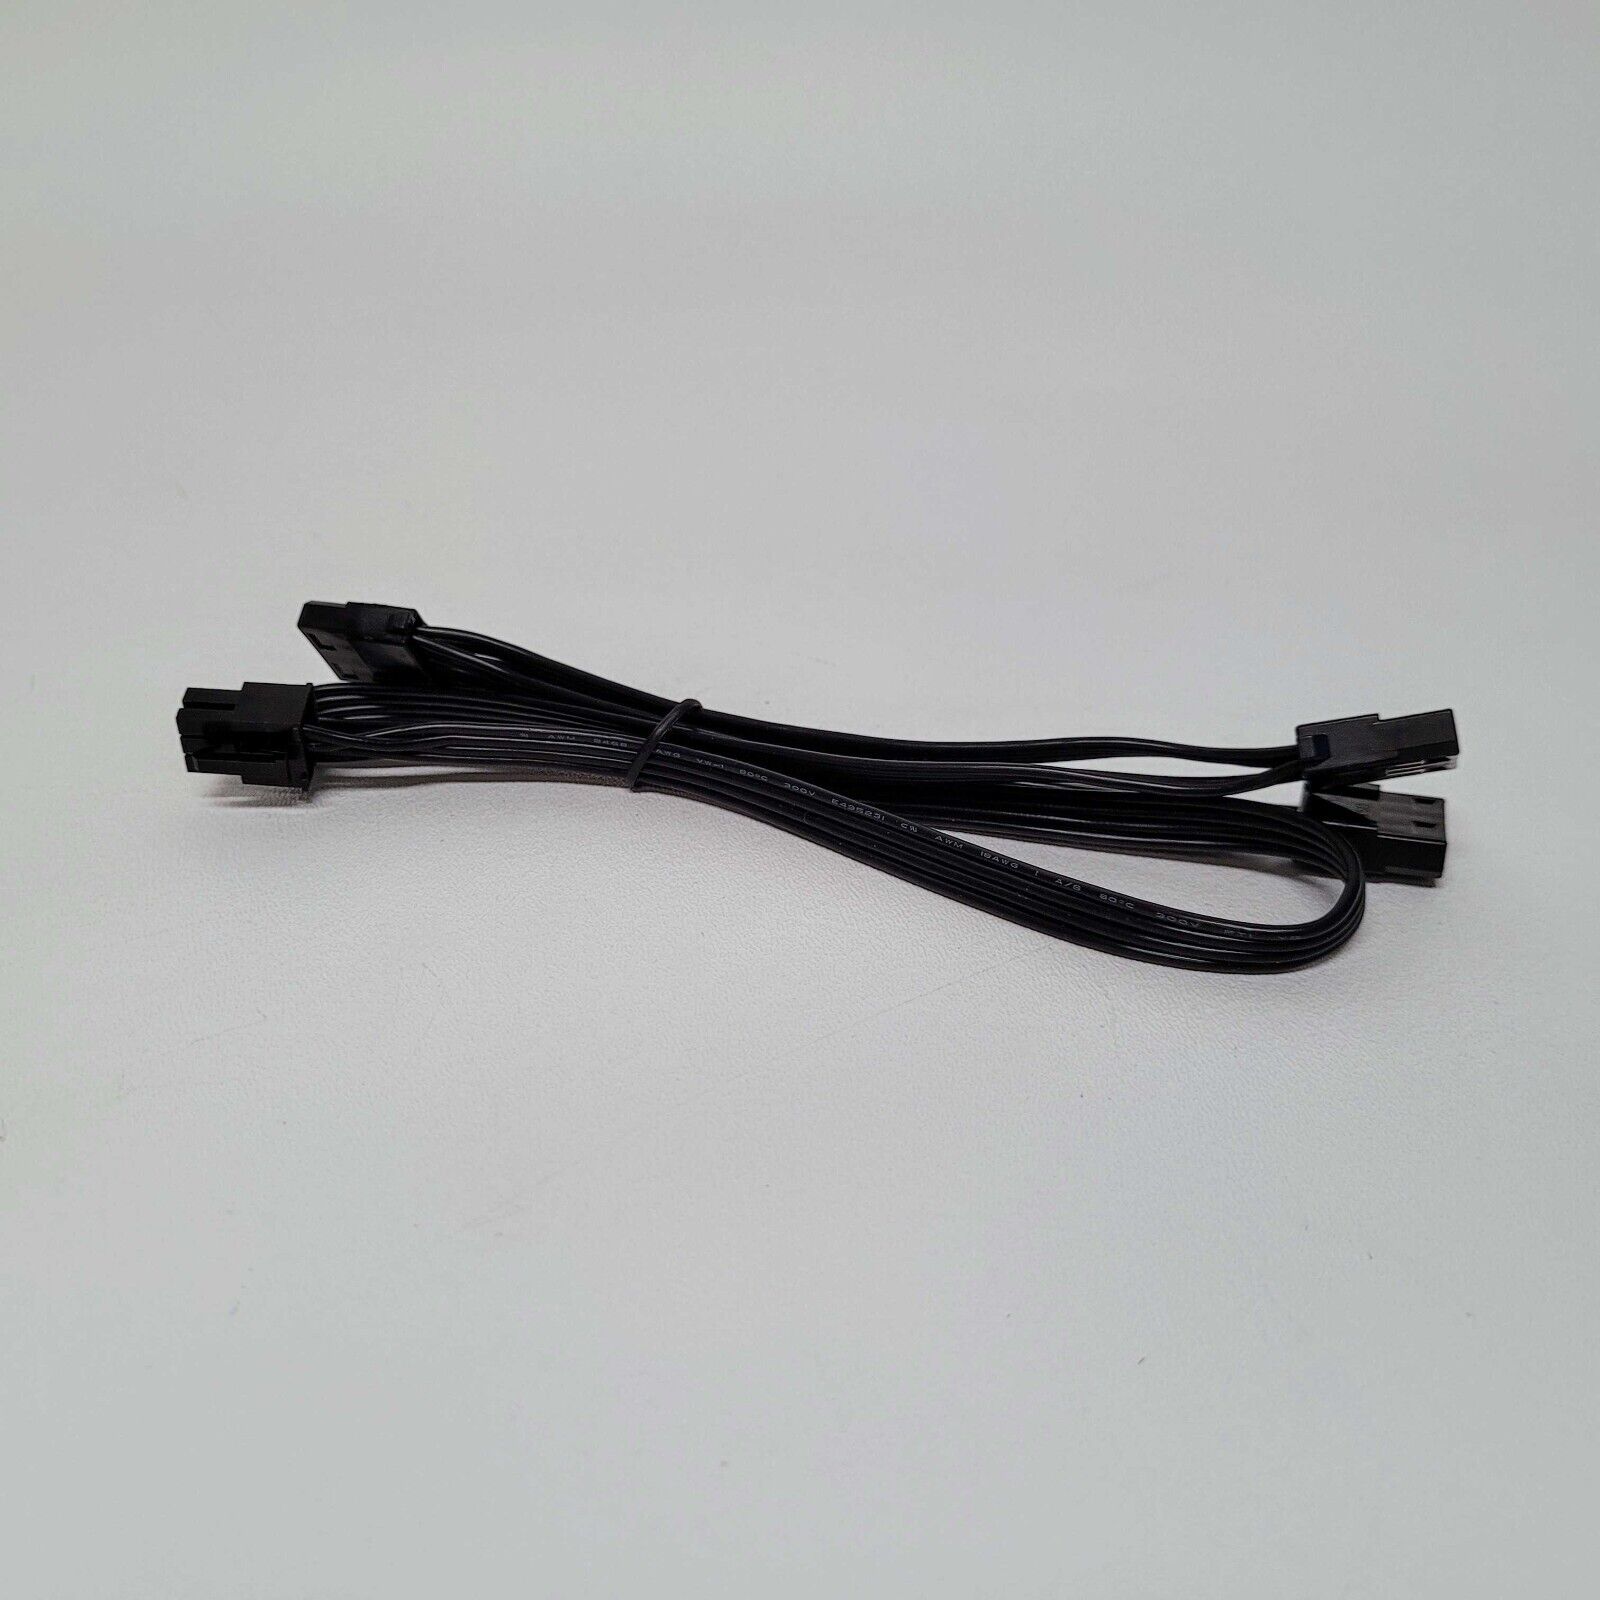 *NEW* EVGA 6-pin 3x 4pin Perif/Molex Cable (Single) - W001-00-000126